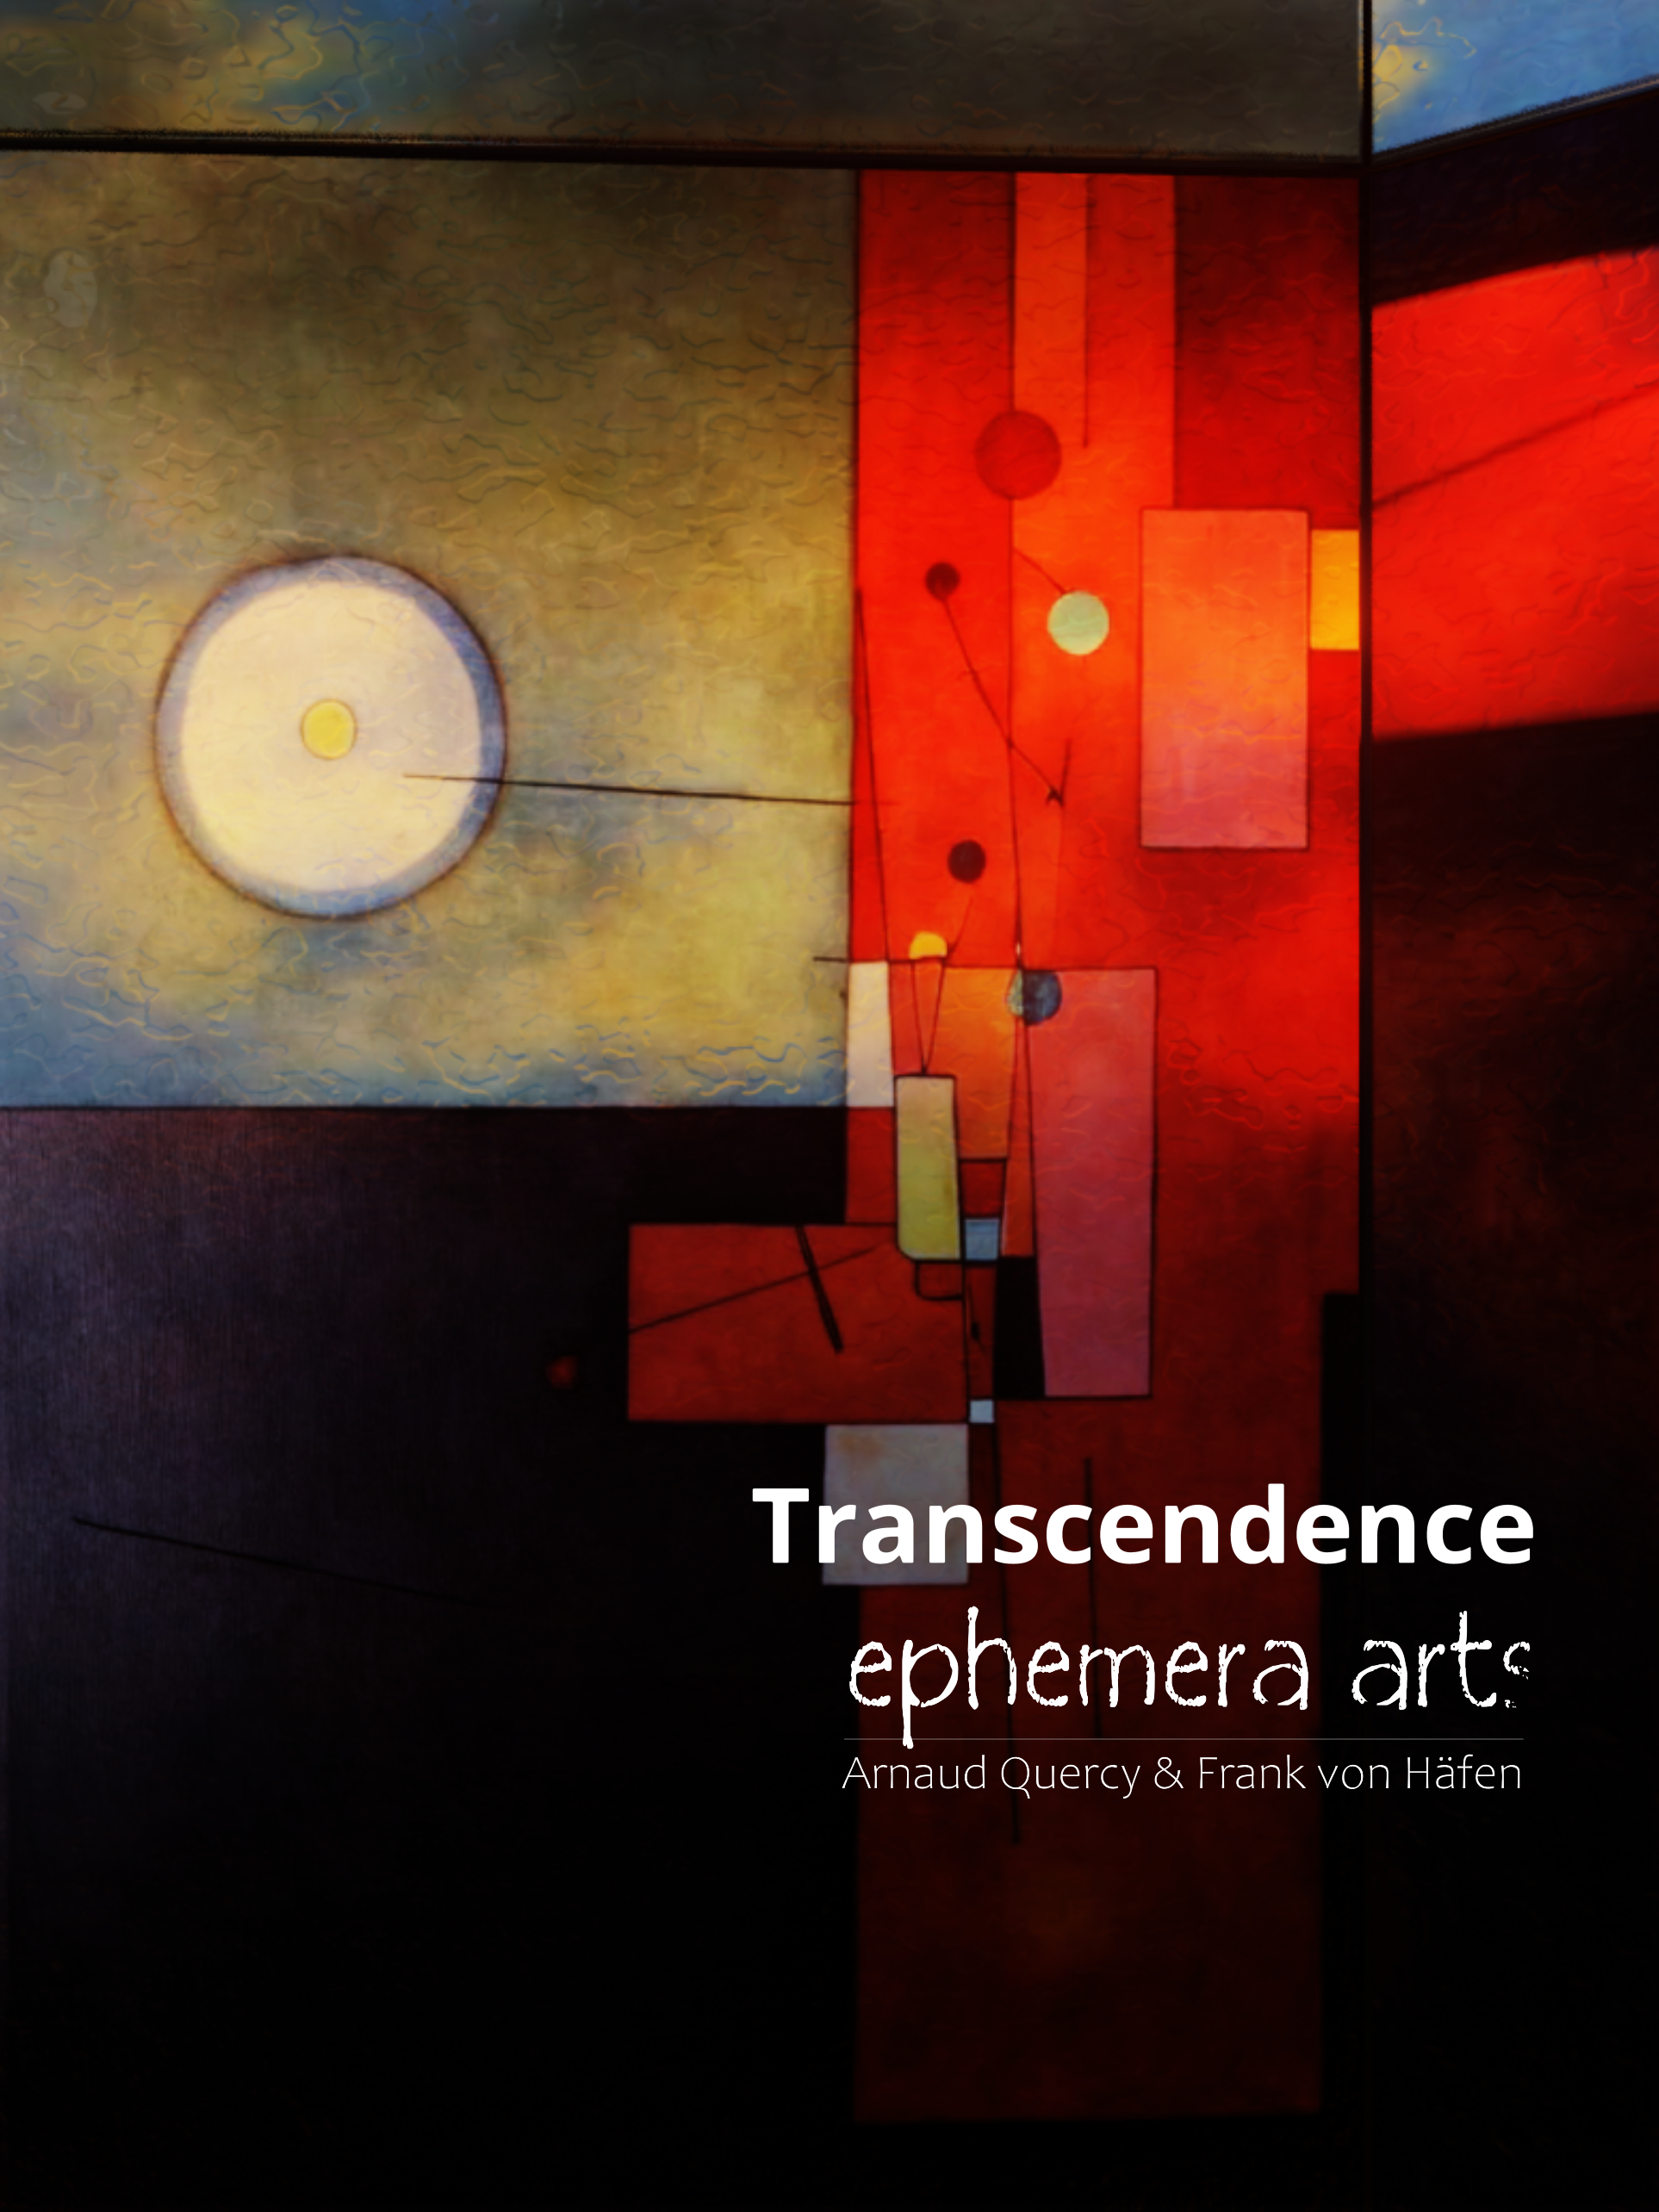 Transcendence - ephemera arts - arnaud quercy - frank von haefen ephemeral art exhibvition, 360 art, immersice art